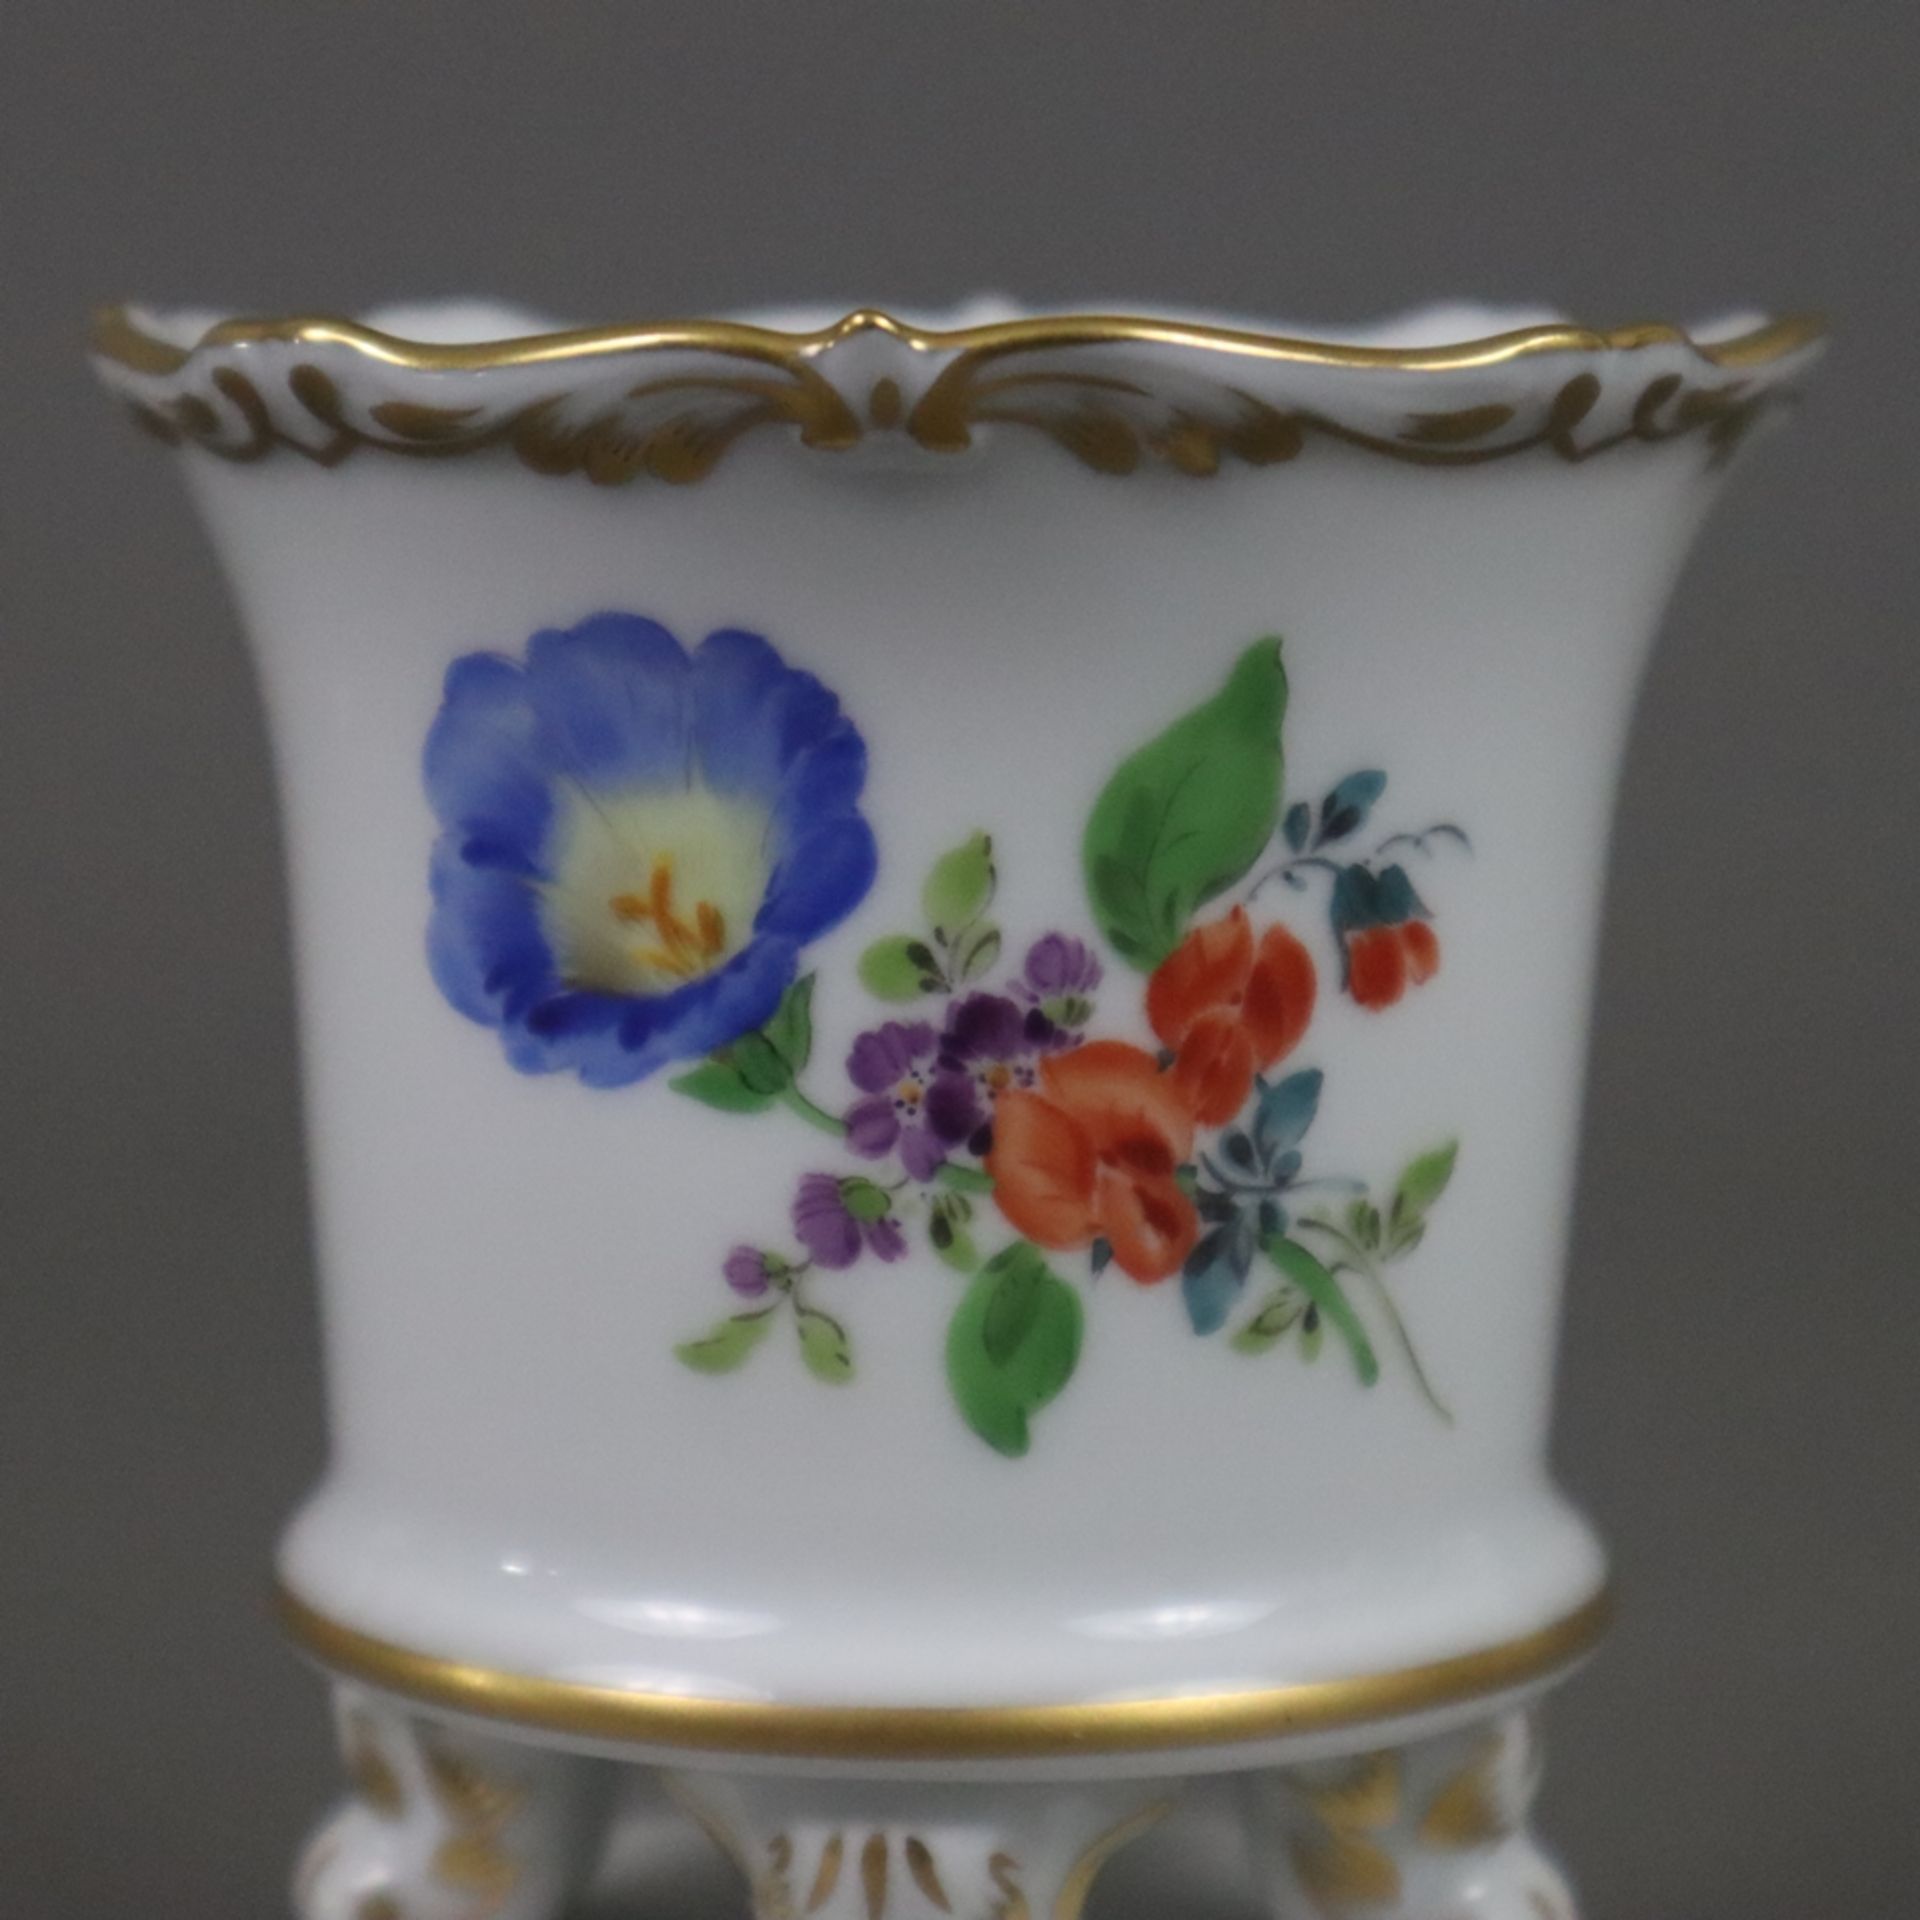 Miniaturvase - Meissen, Porzellan, polychrome Blumenmalerei, Goldstaffage, zylindrischer Körper mit - Image 3 of 6